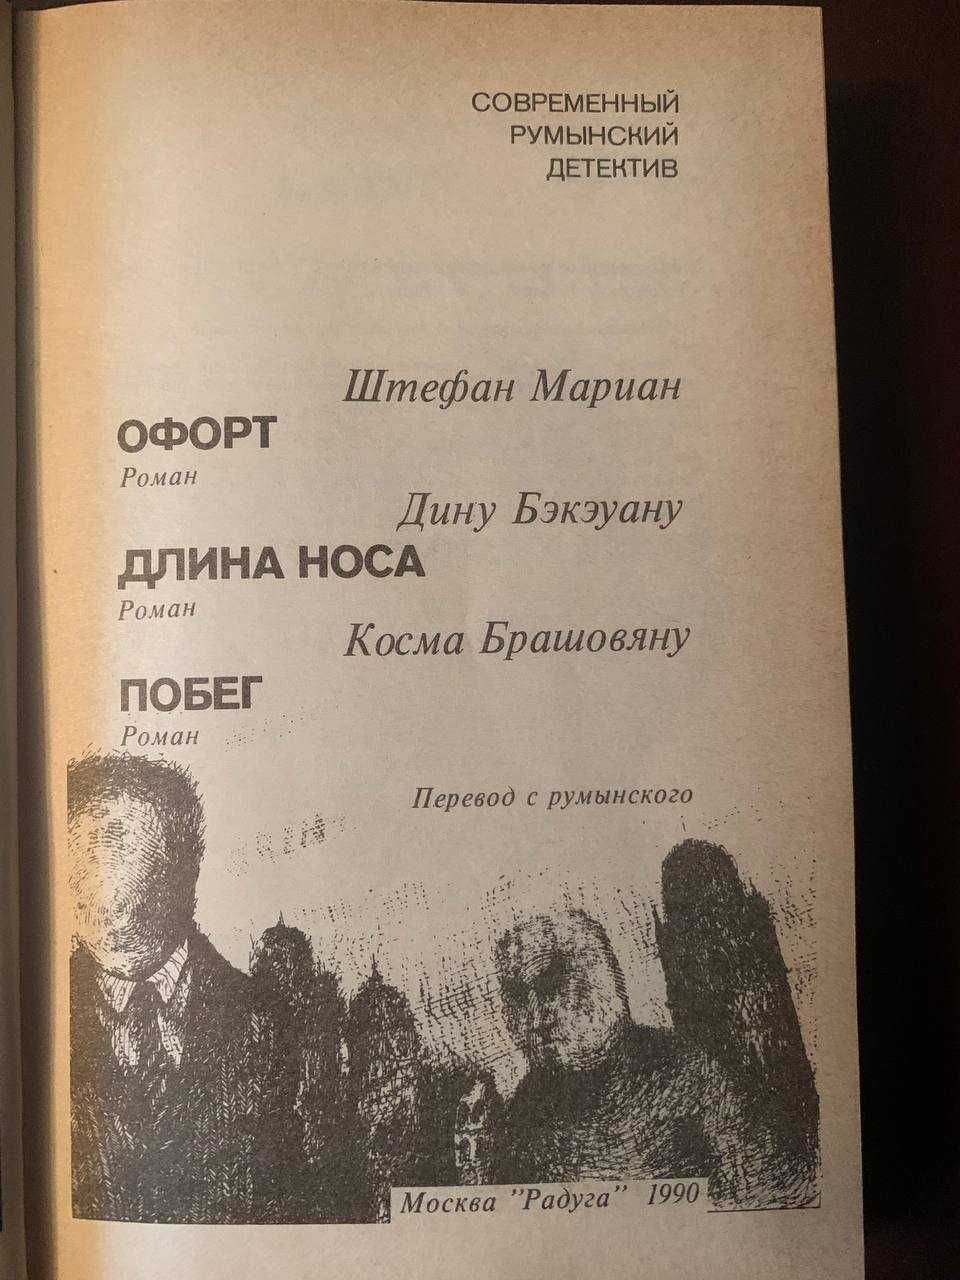 Книга «Современный румынский детектив»